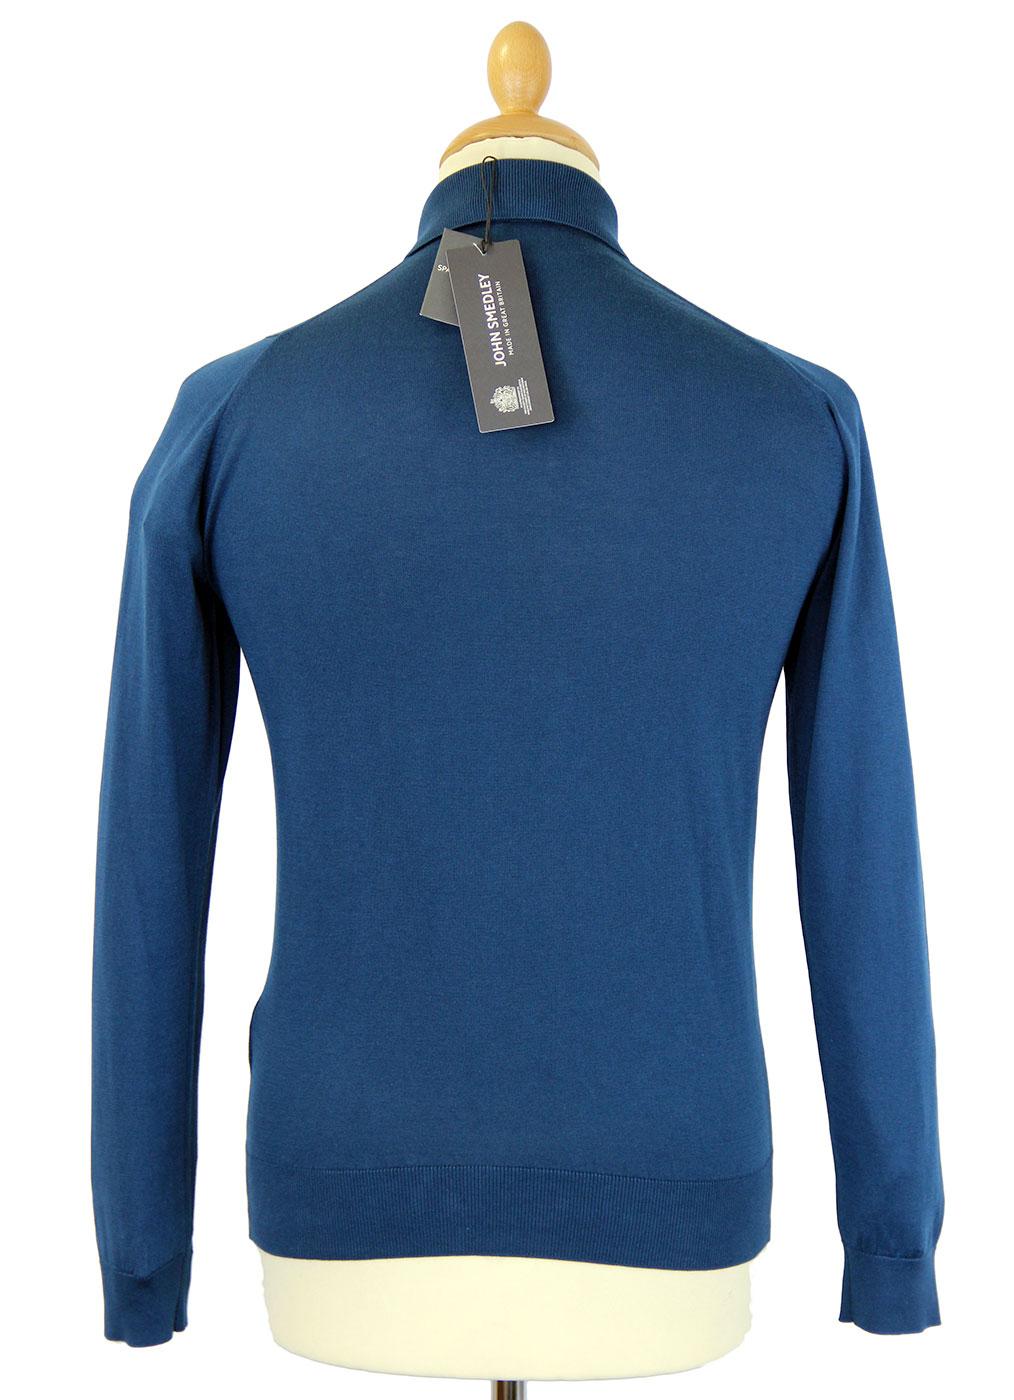 JOHN SMEDLEY Exeter Retro 60s Mod Slim Fit Polo Shirt Shadow Blue